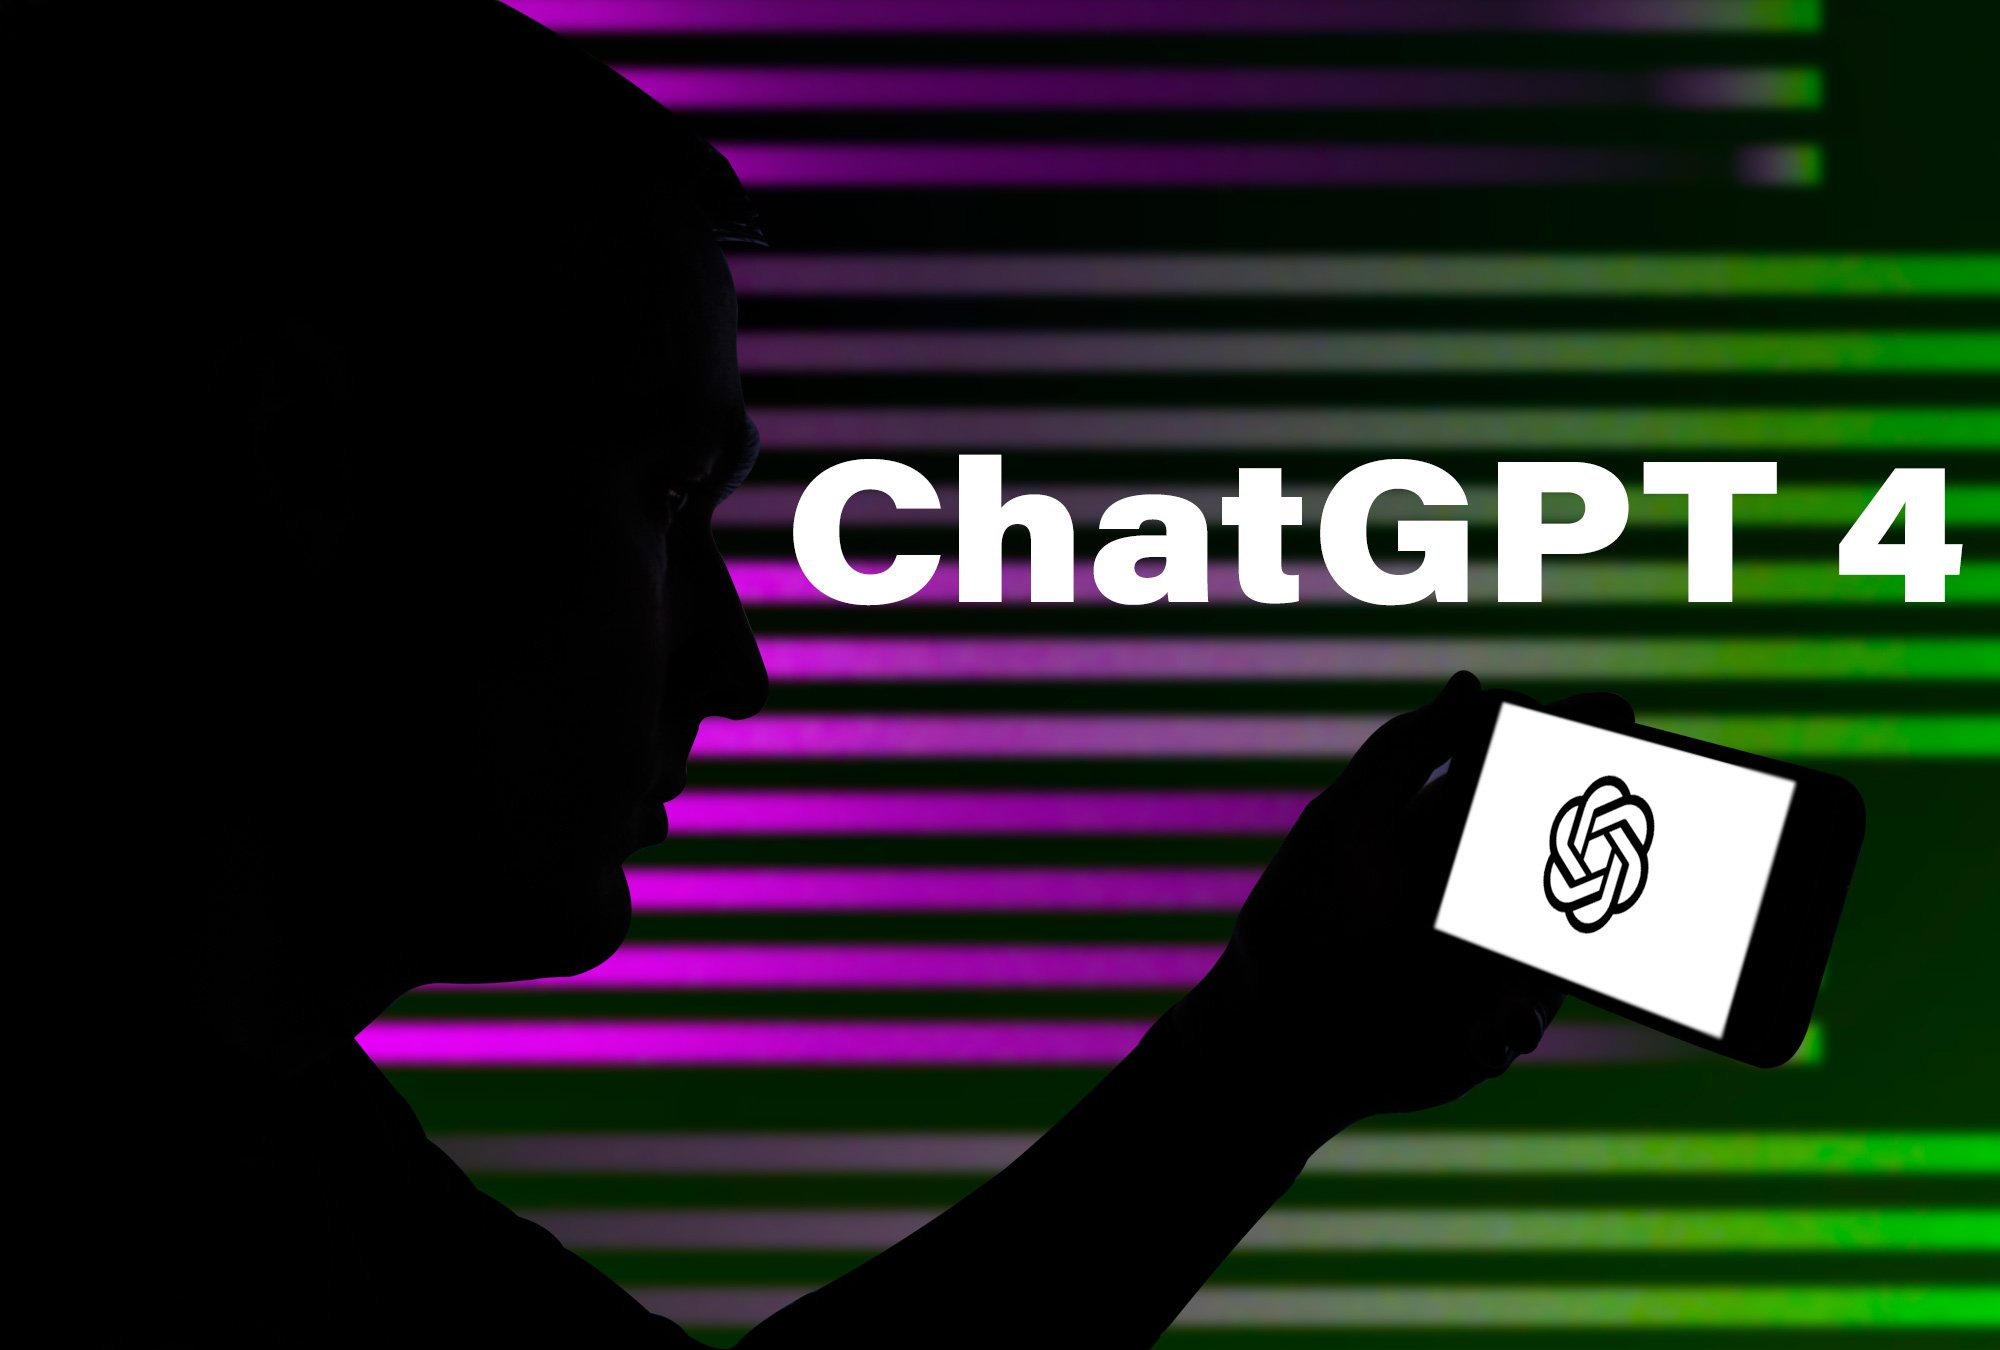 Ya llegó Chat GPT-4. ¿Qué sorpresas trae?